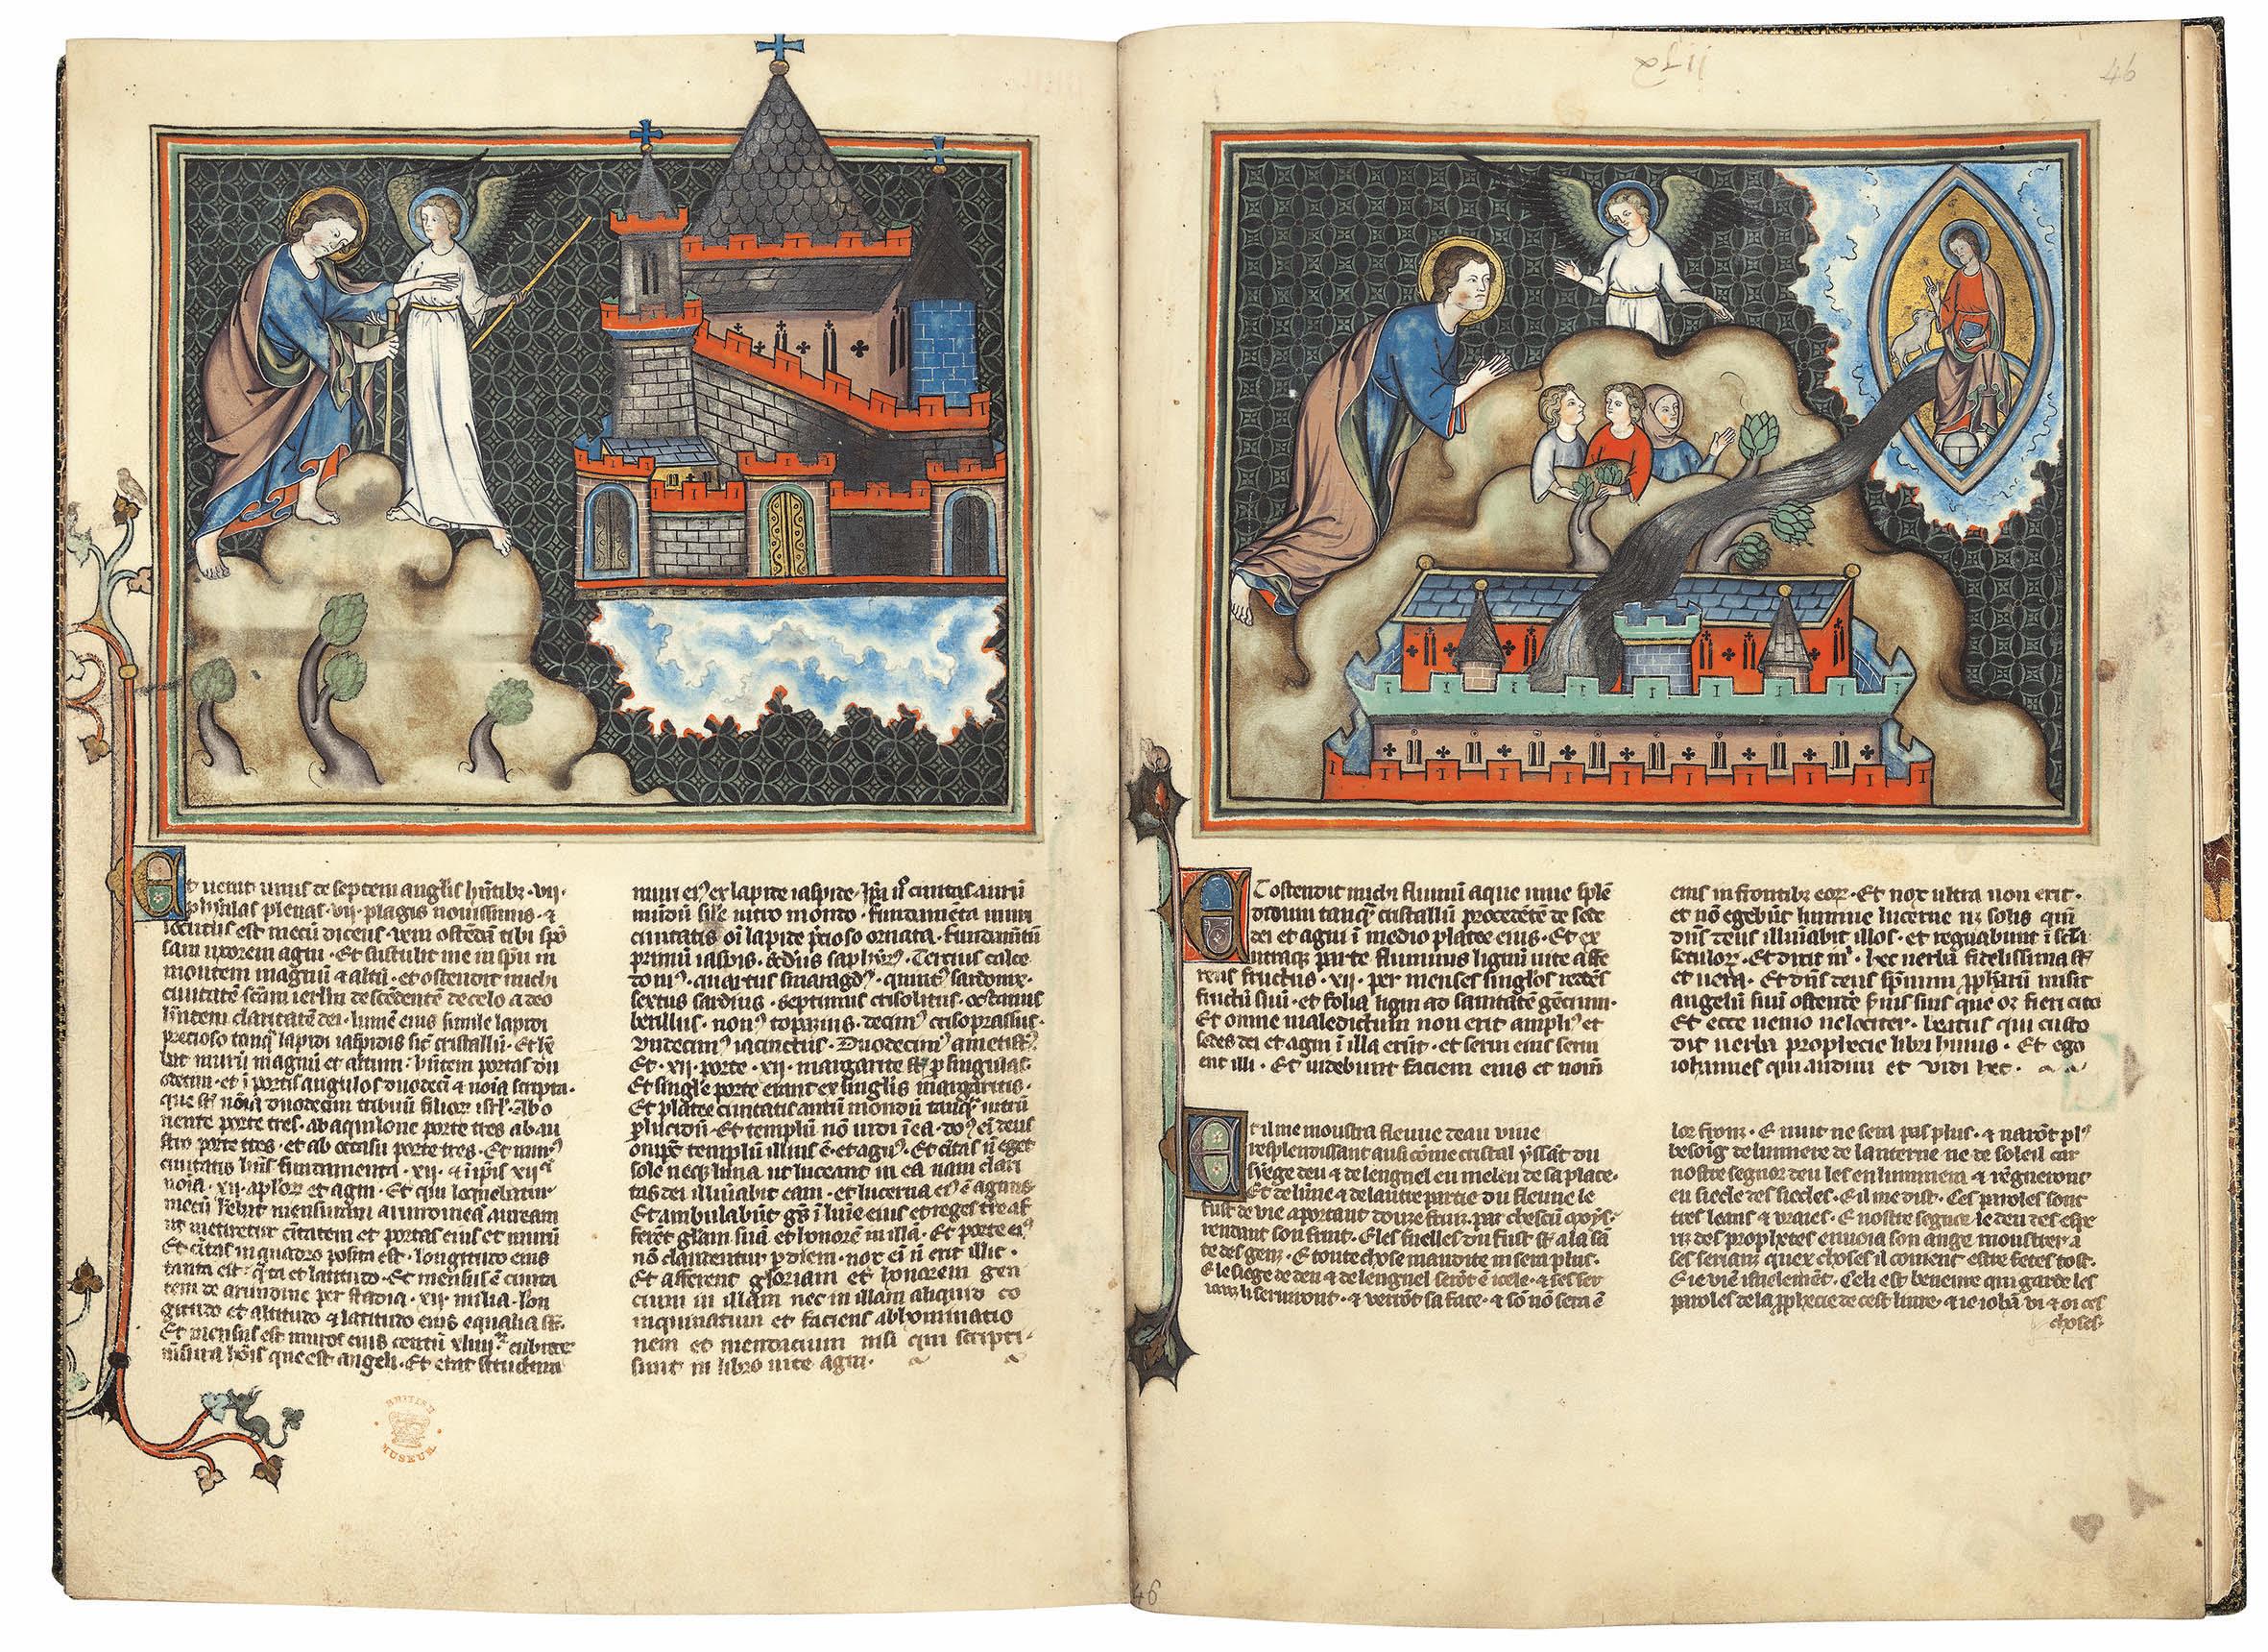 Es handelt sich um eine einzigartige, auf 987 Exemplare limitierte Faksimile-Reproduktion eines mittelalterlichen Manuskripts, der Apokalypse Val-Dieu, die sich im Besitz der British Library befindet. Sie wurde durch die Kombination von